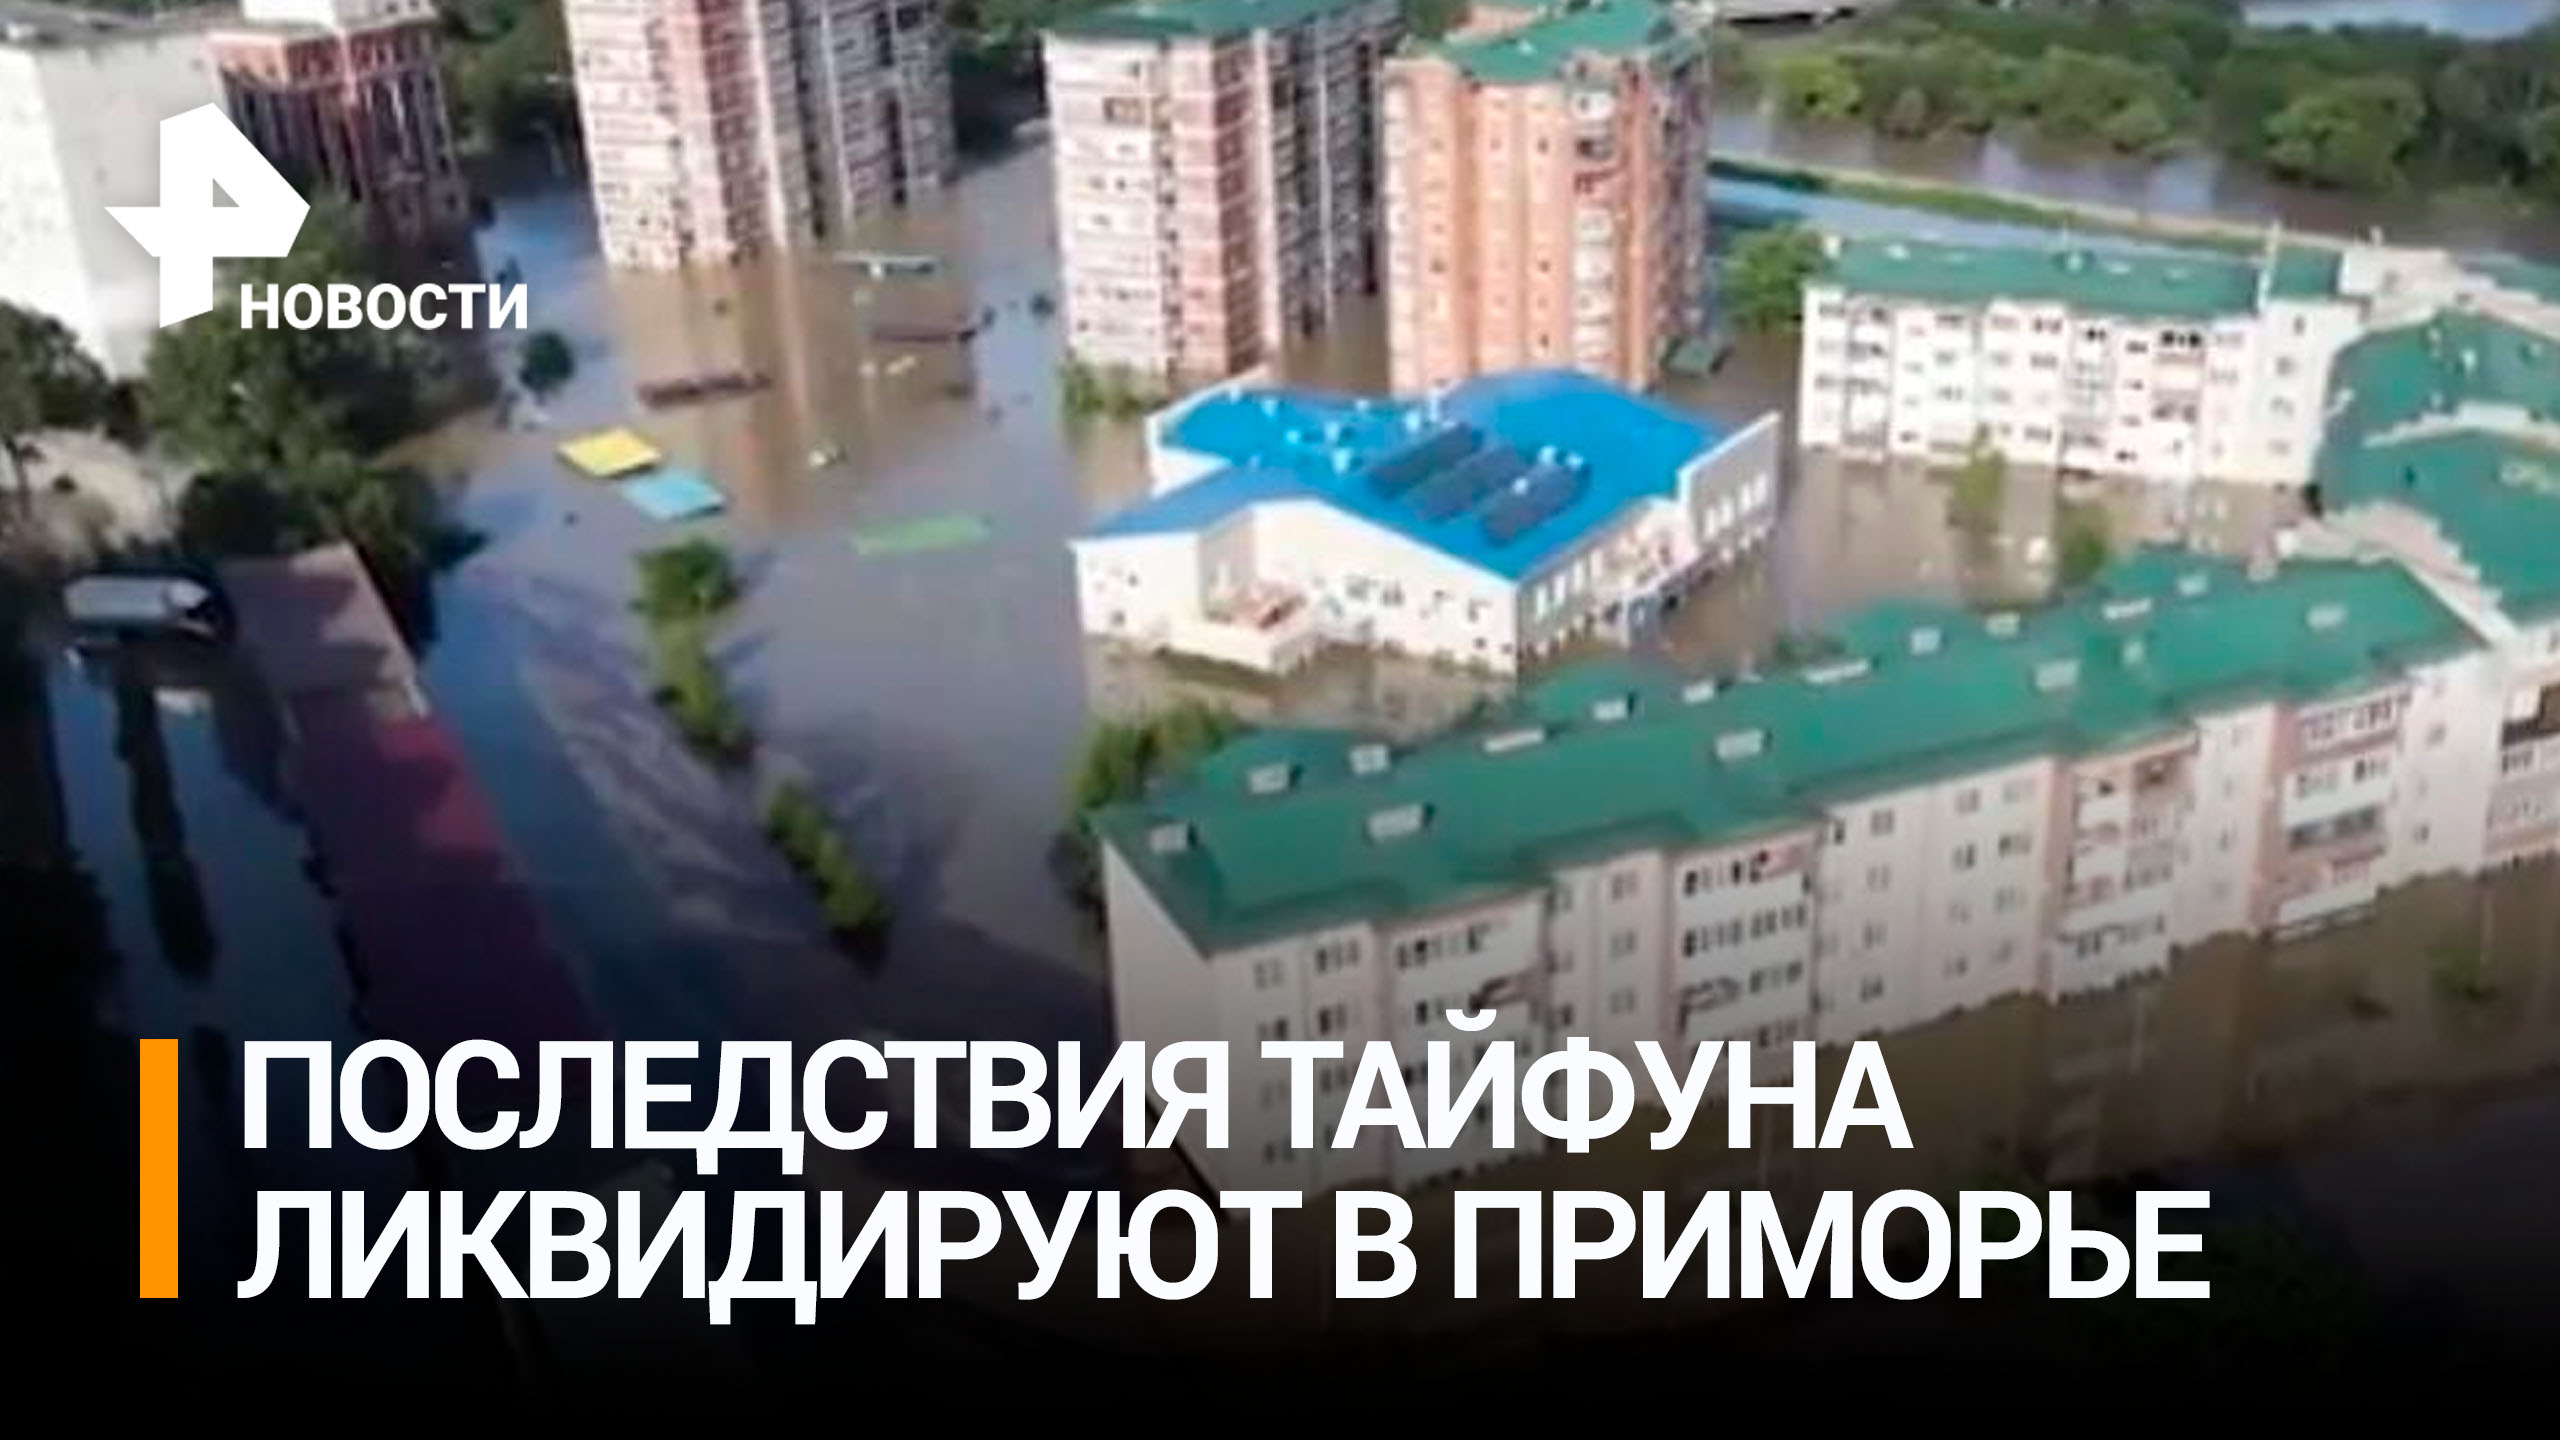 Приморье ликвидируют последствия паводков после тайфуна "Ханун" / РЕН Новости